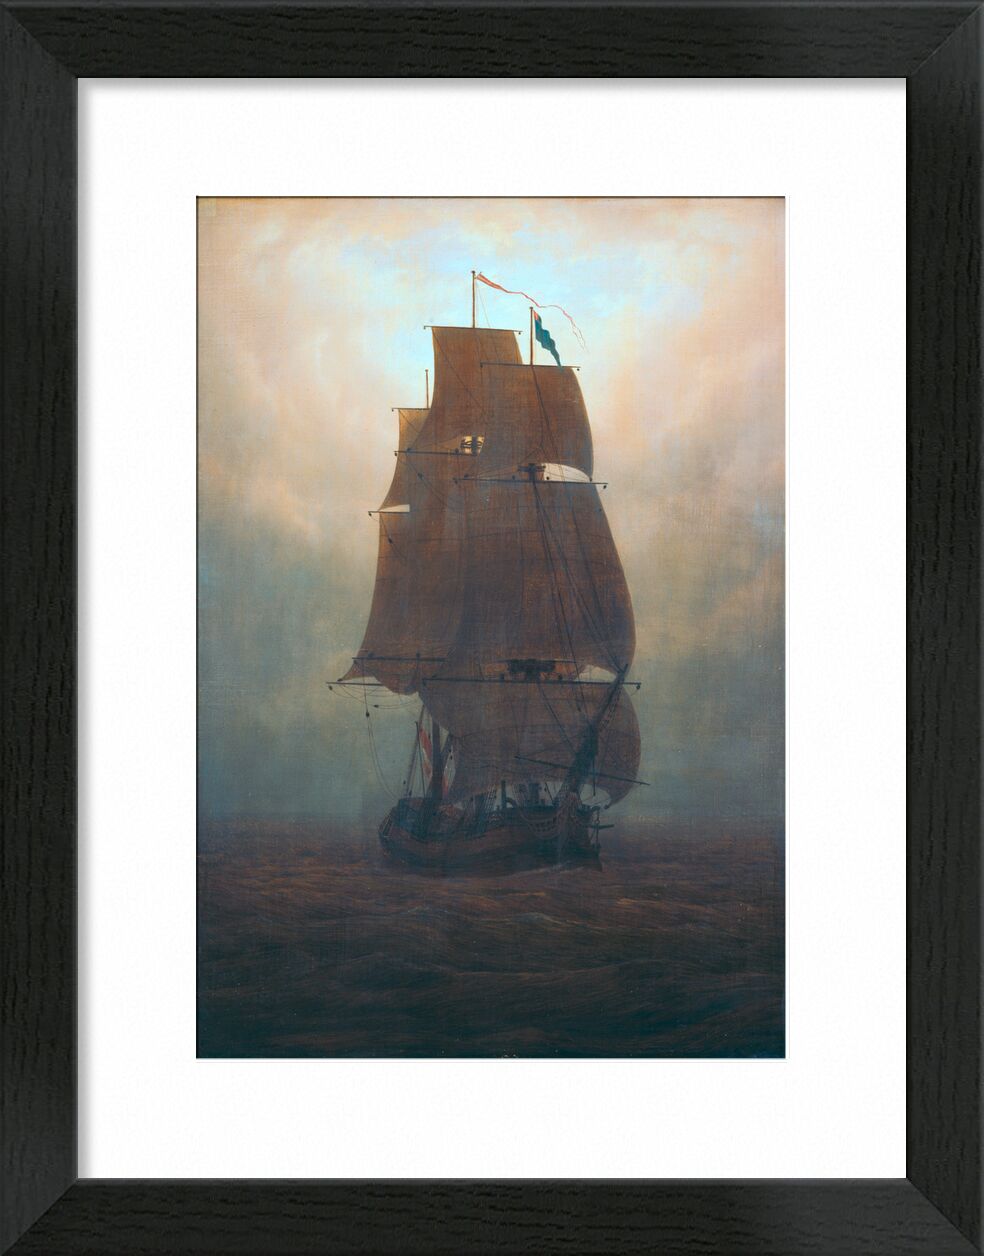 Segelschiff im Nebel - Caspar David Friedrich von Bildende Kunst, Prodi Art, Sonne, Nacht, Nebel, yacht, Meer, Boot, Caspar David Friedrich, Friedrich